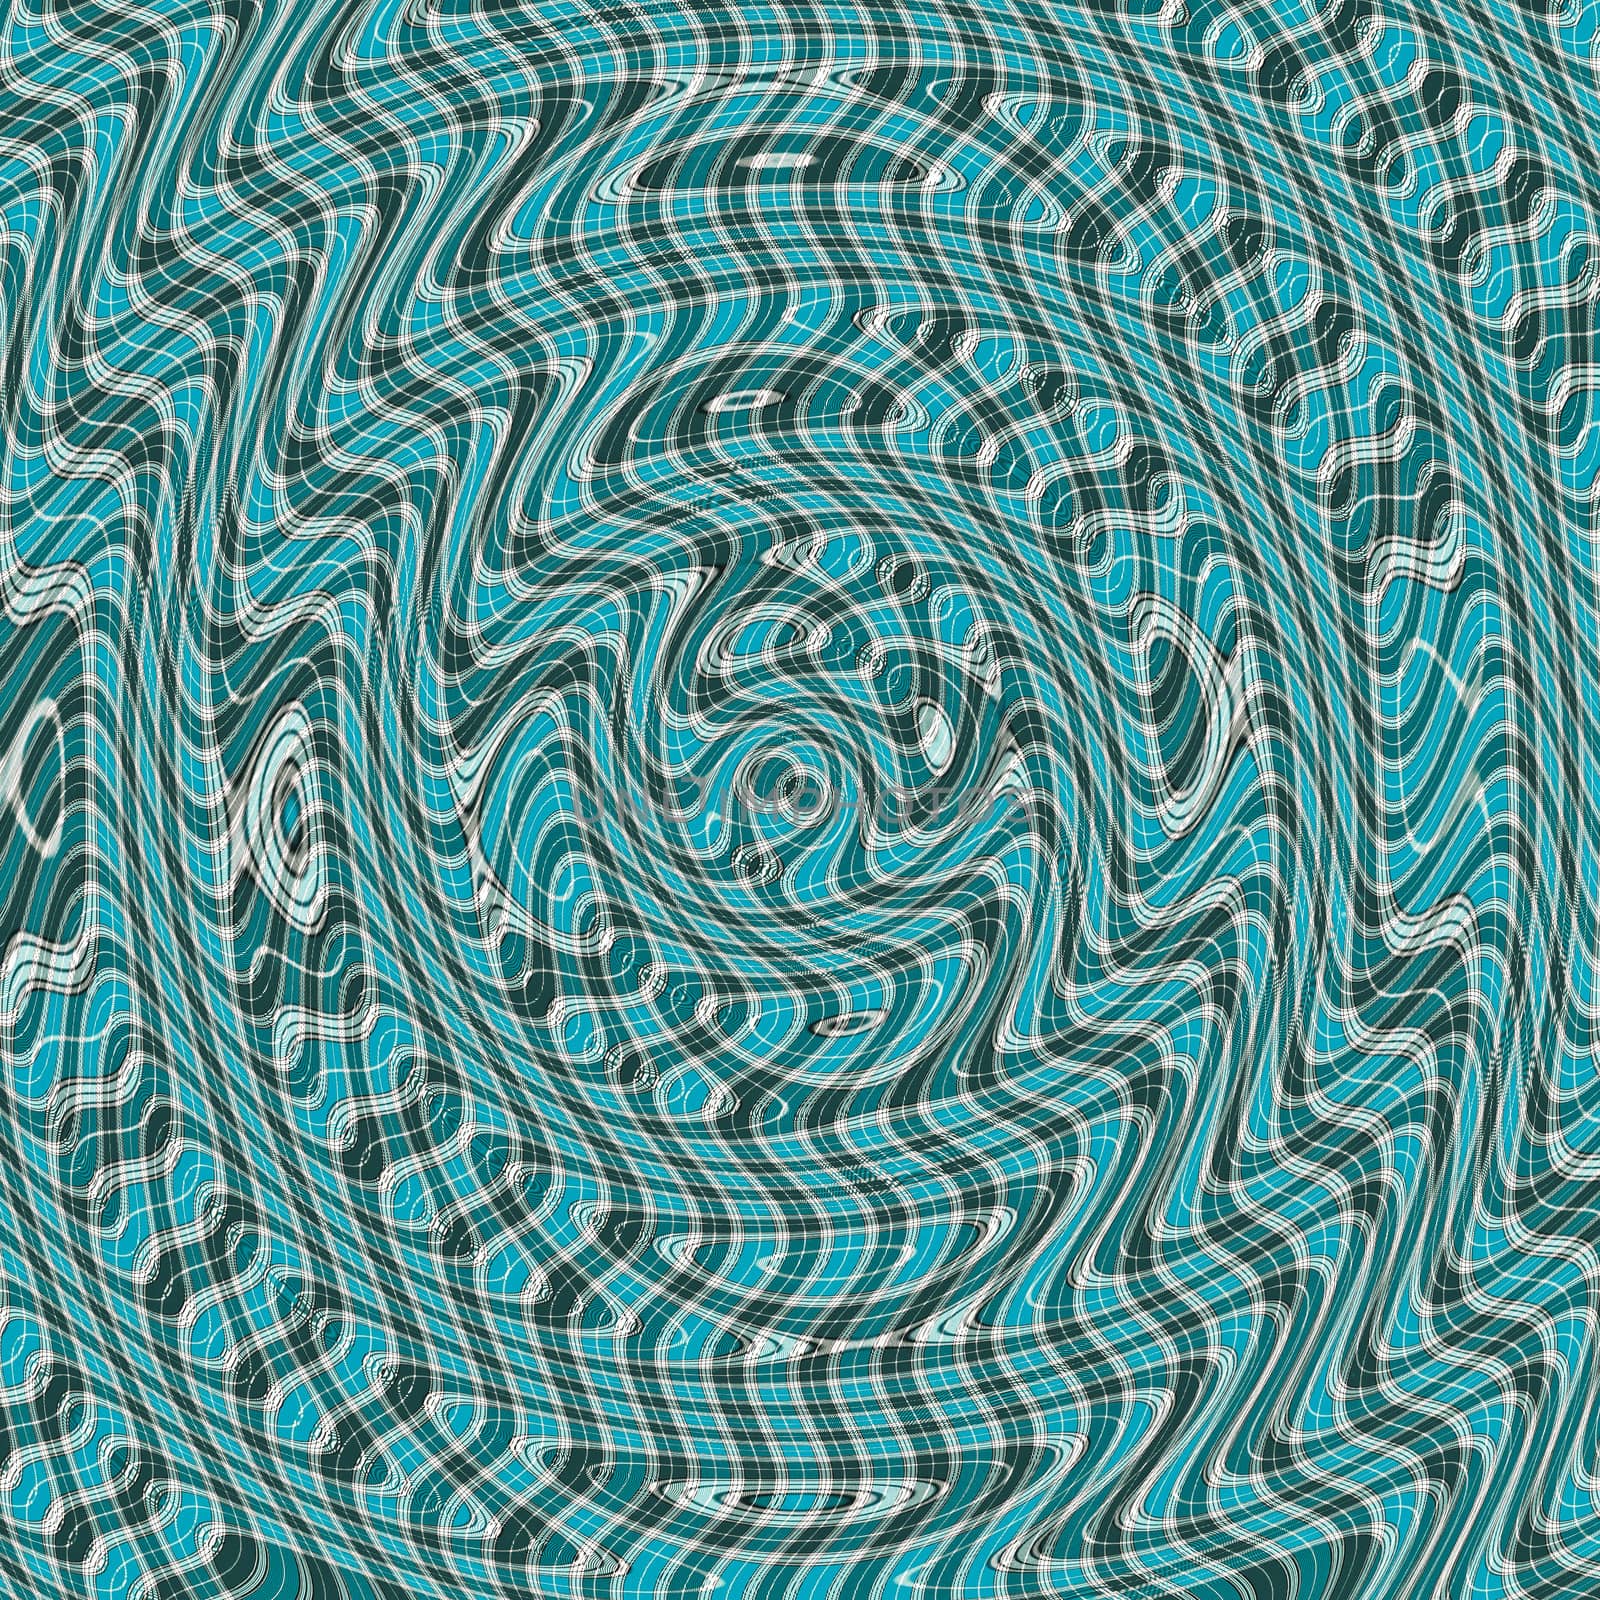 Tartan pattern by trgowanlock